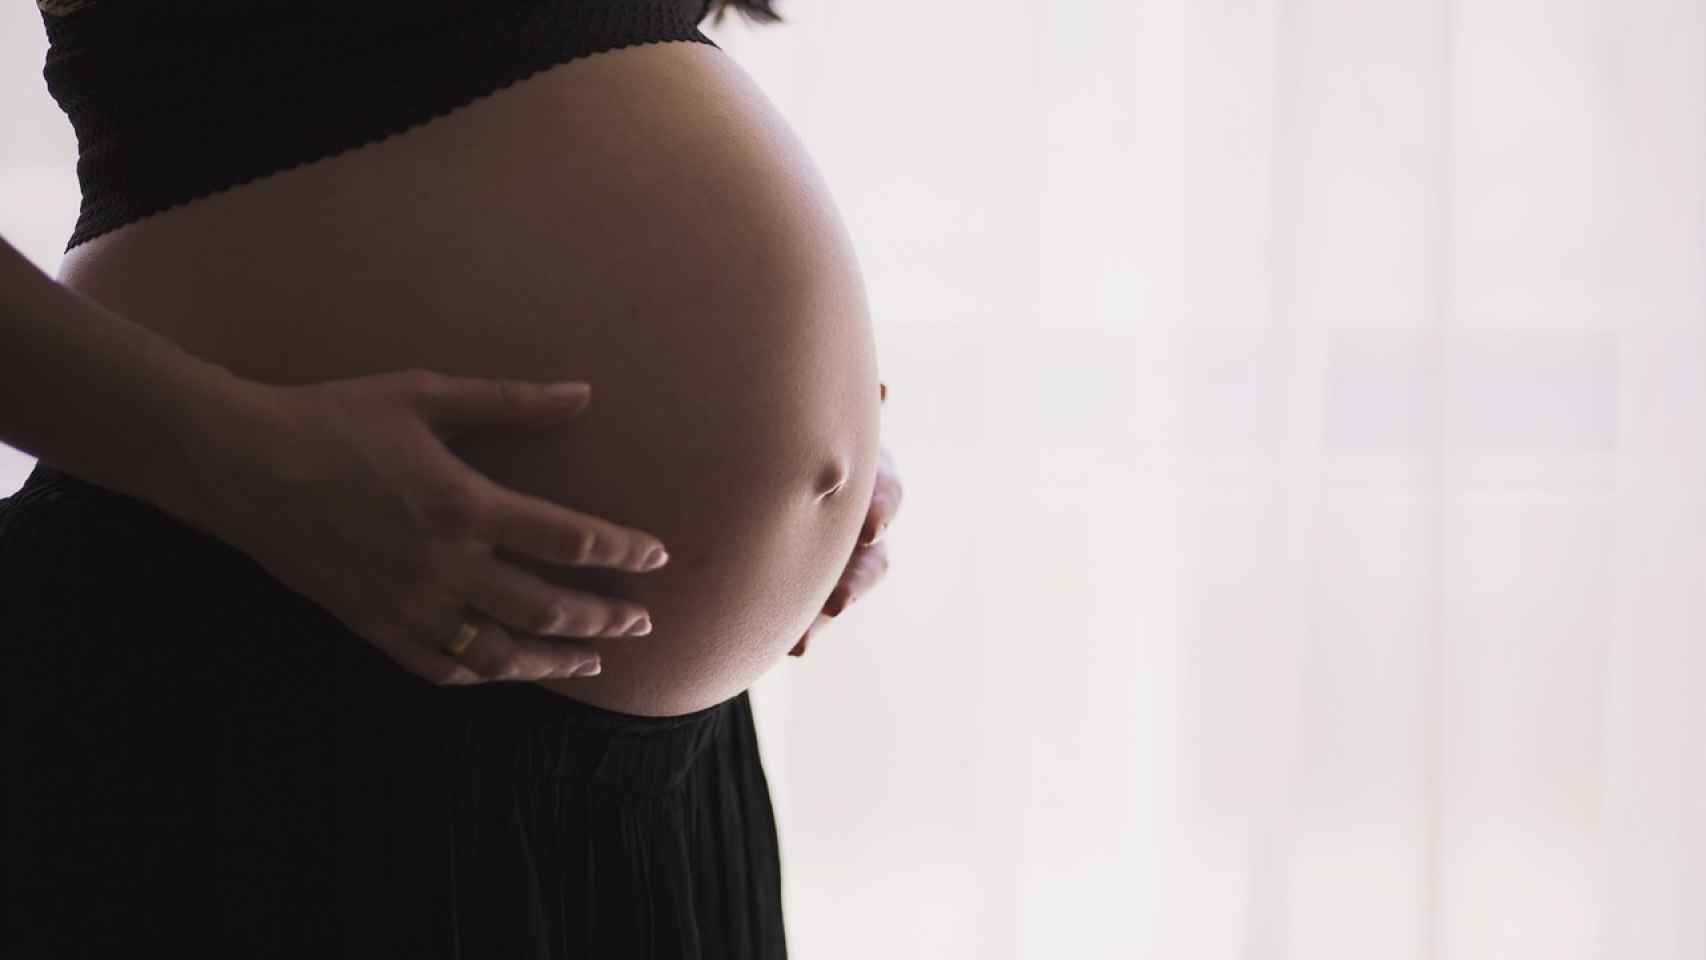 Semana 3 de embarazo: inicio del desarrollo del embrión